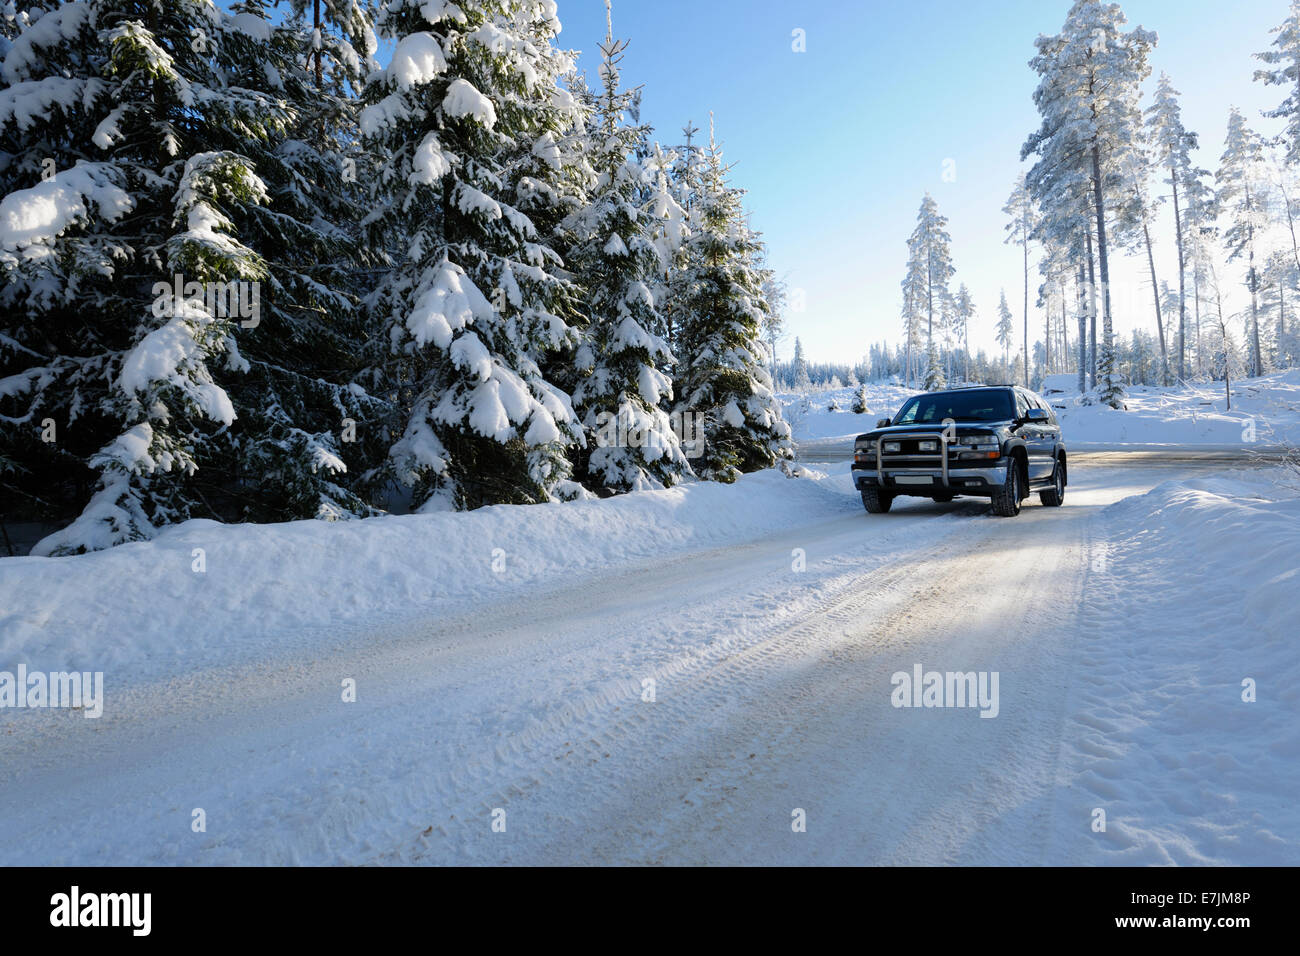 Suv la guida in presenza di neve condizioni invernali, scenario dalla Svezia Foto Stock